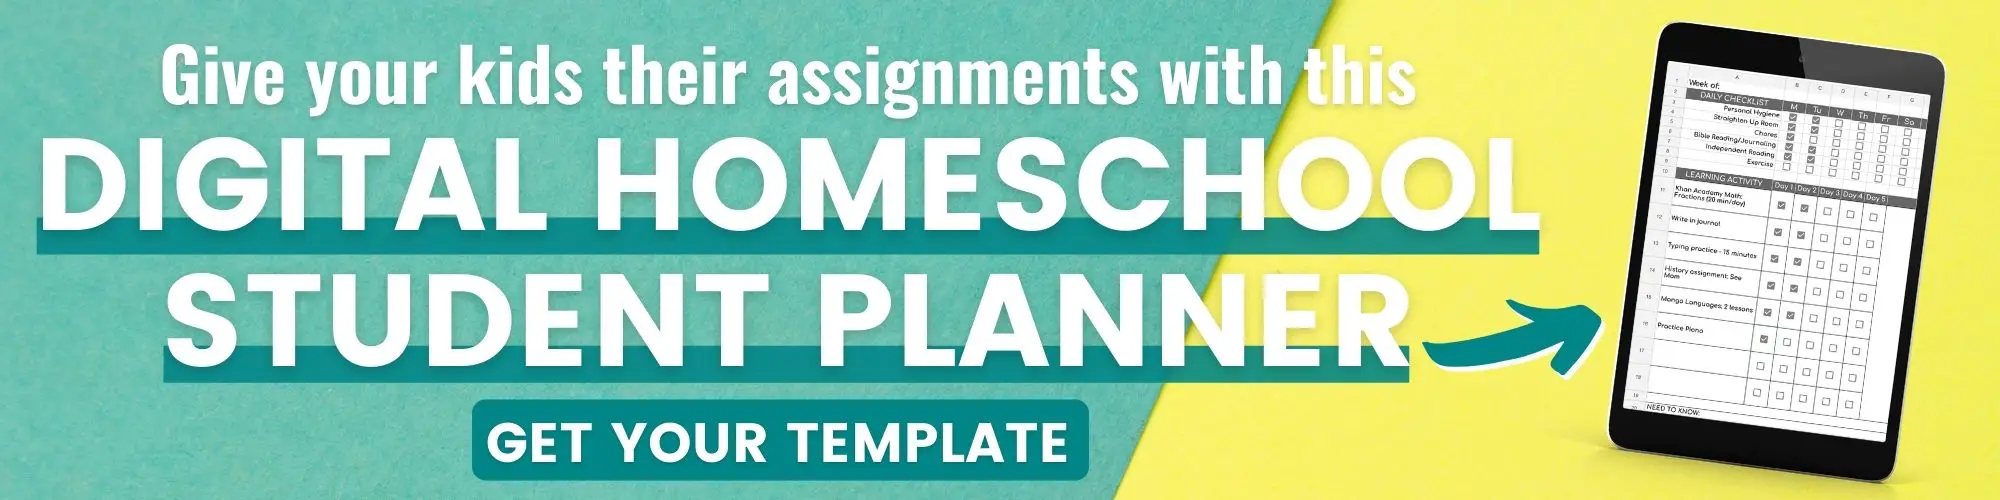 organize homeschool assignments